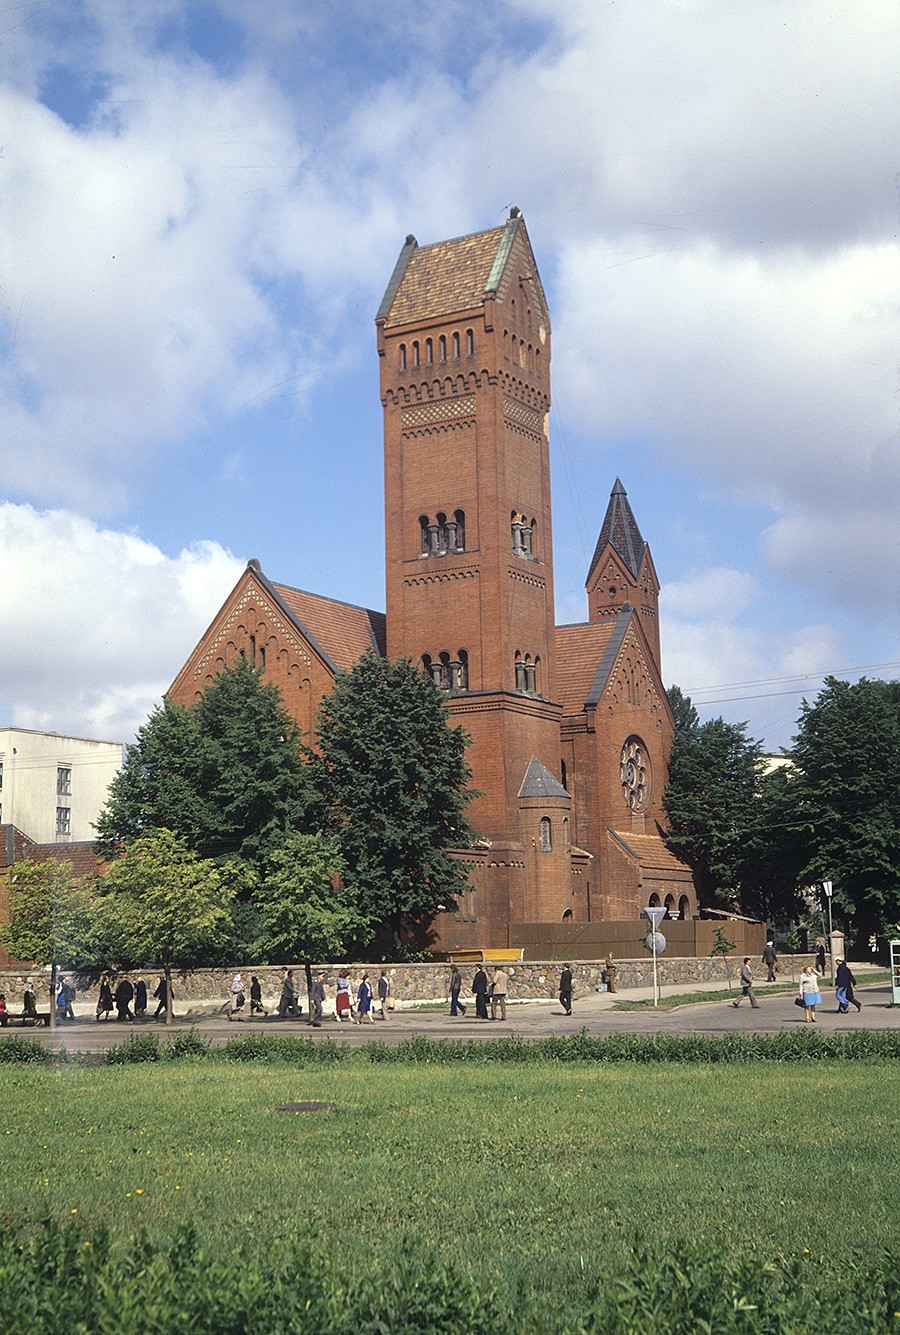 Cerkev sv. Simeona in Helene leta 1983

